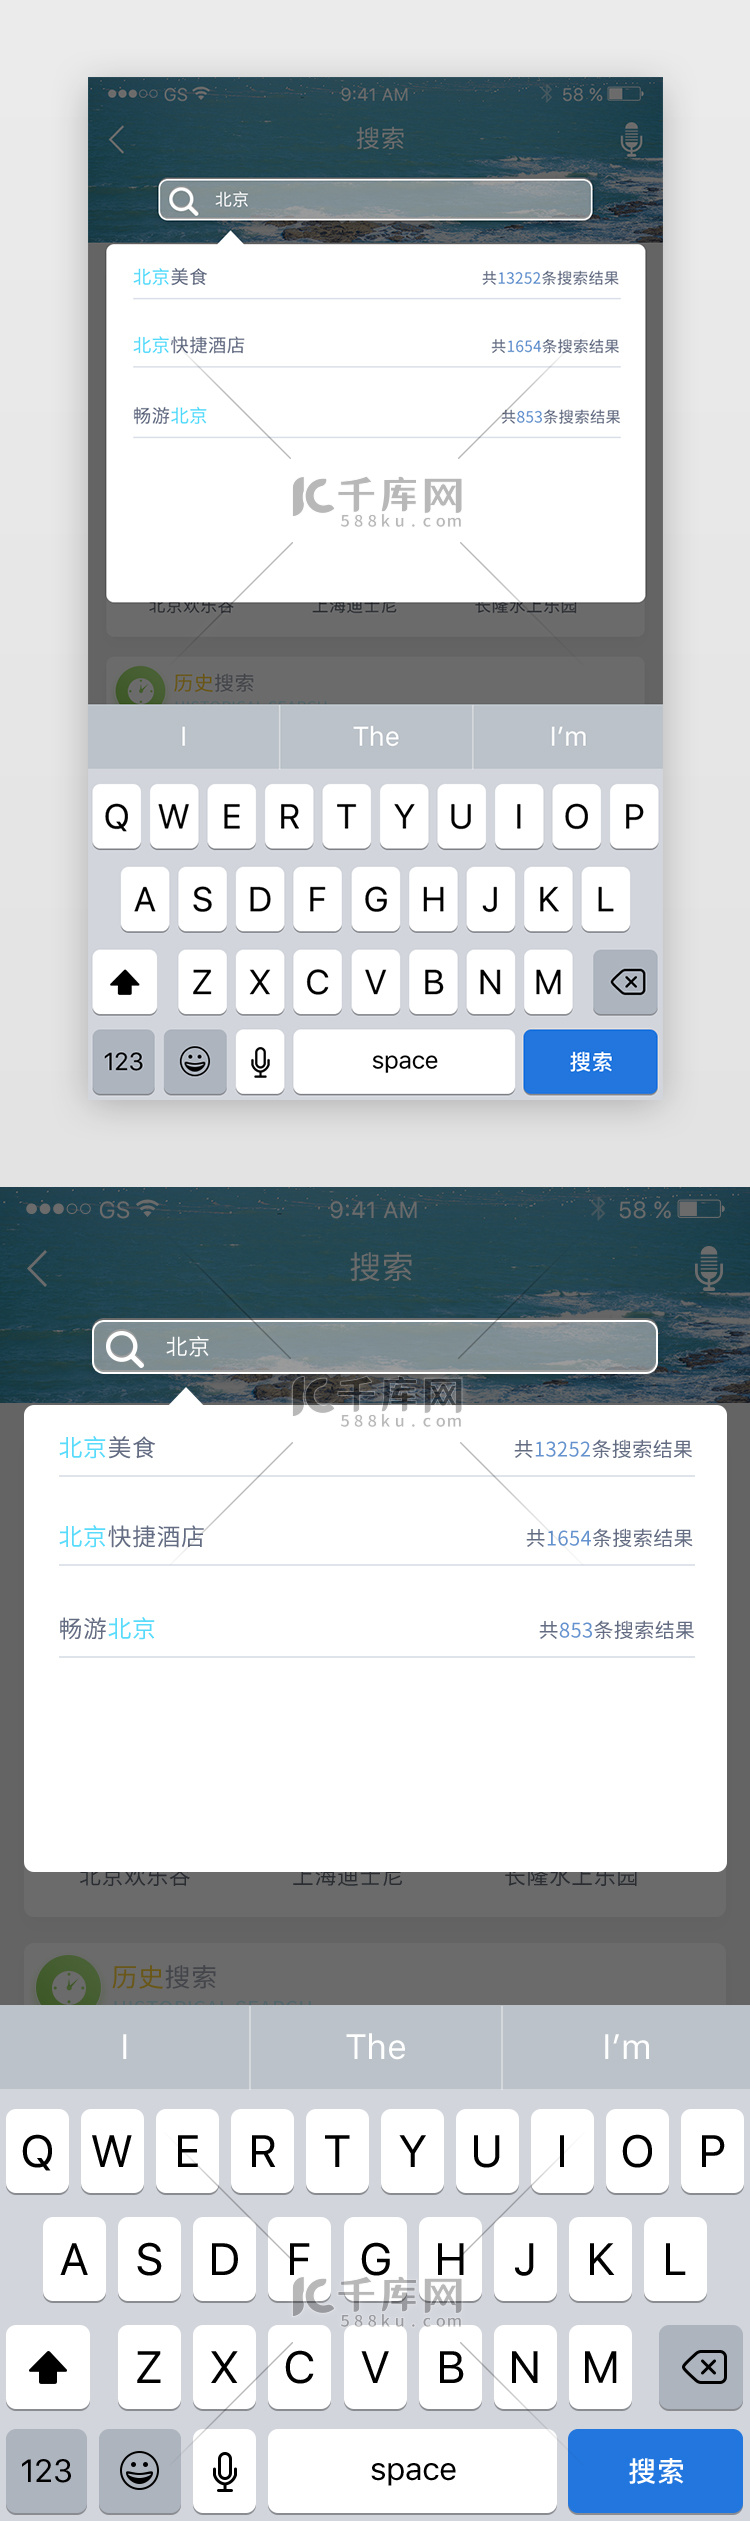 蓝色渐变风格综合旅游app搜索进程页